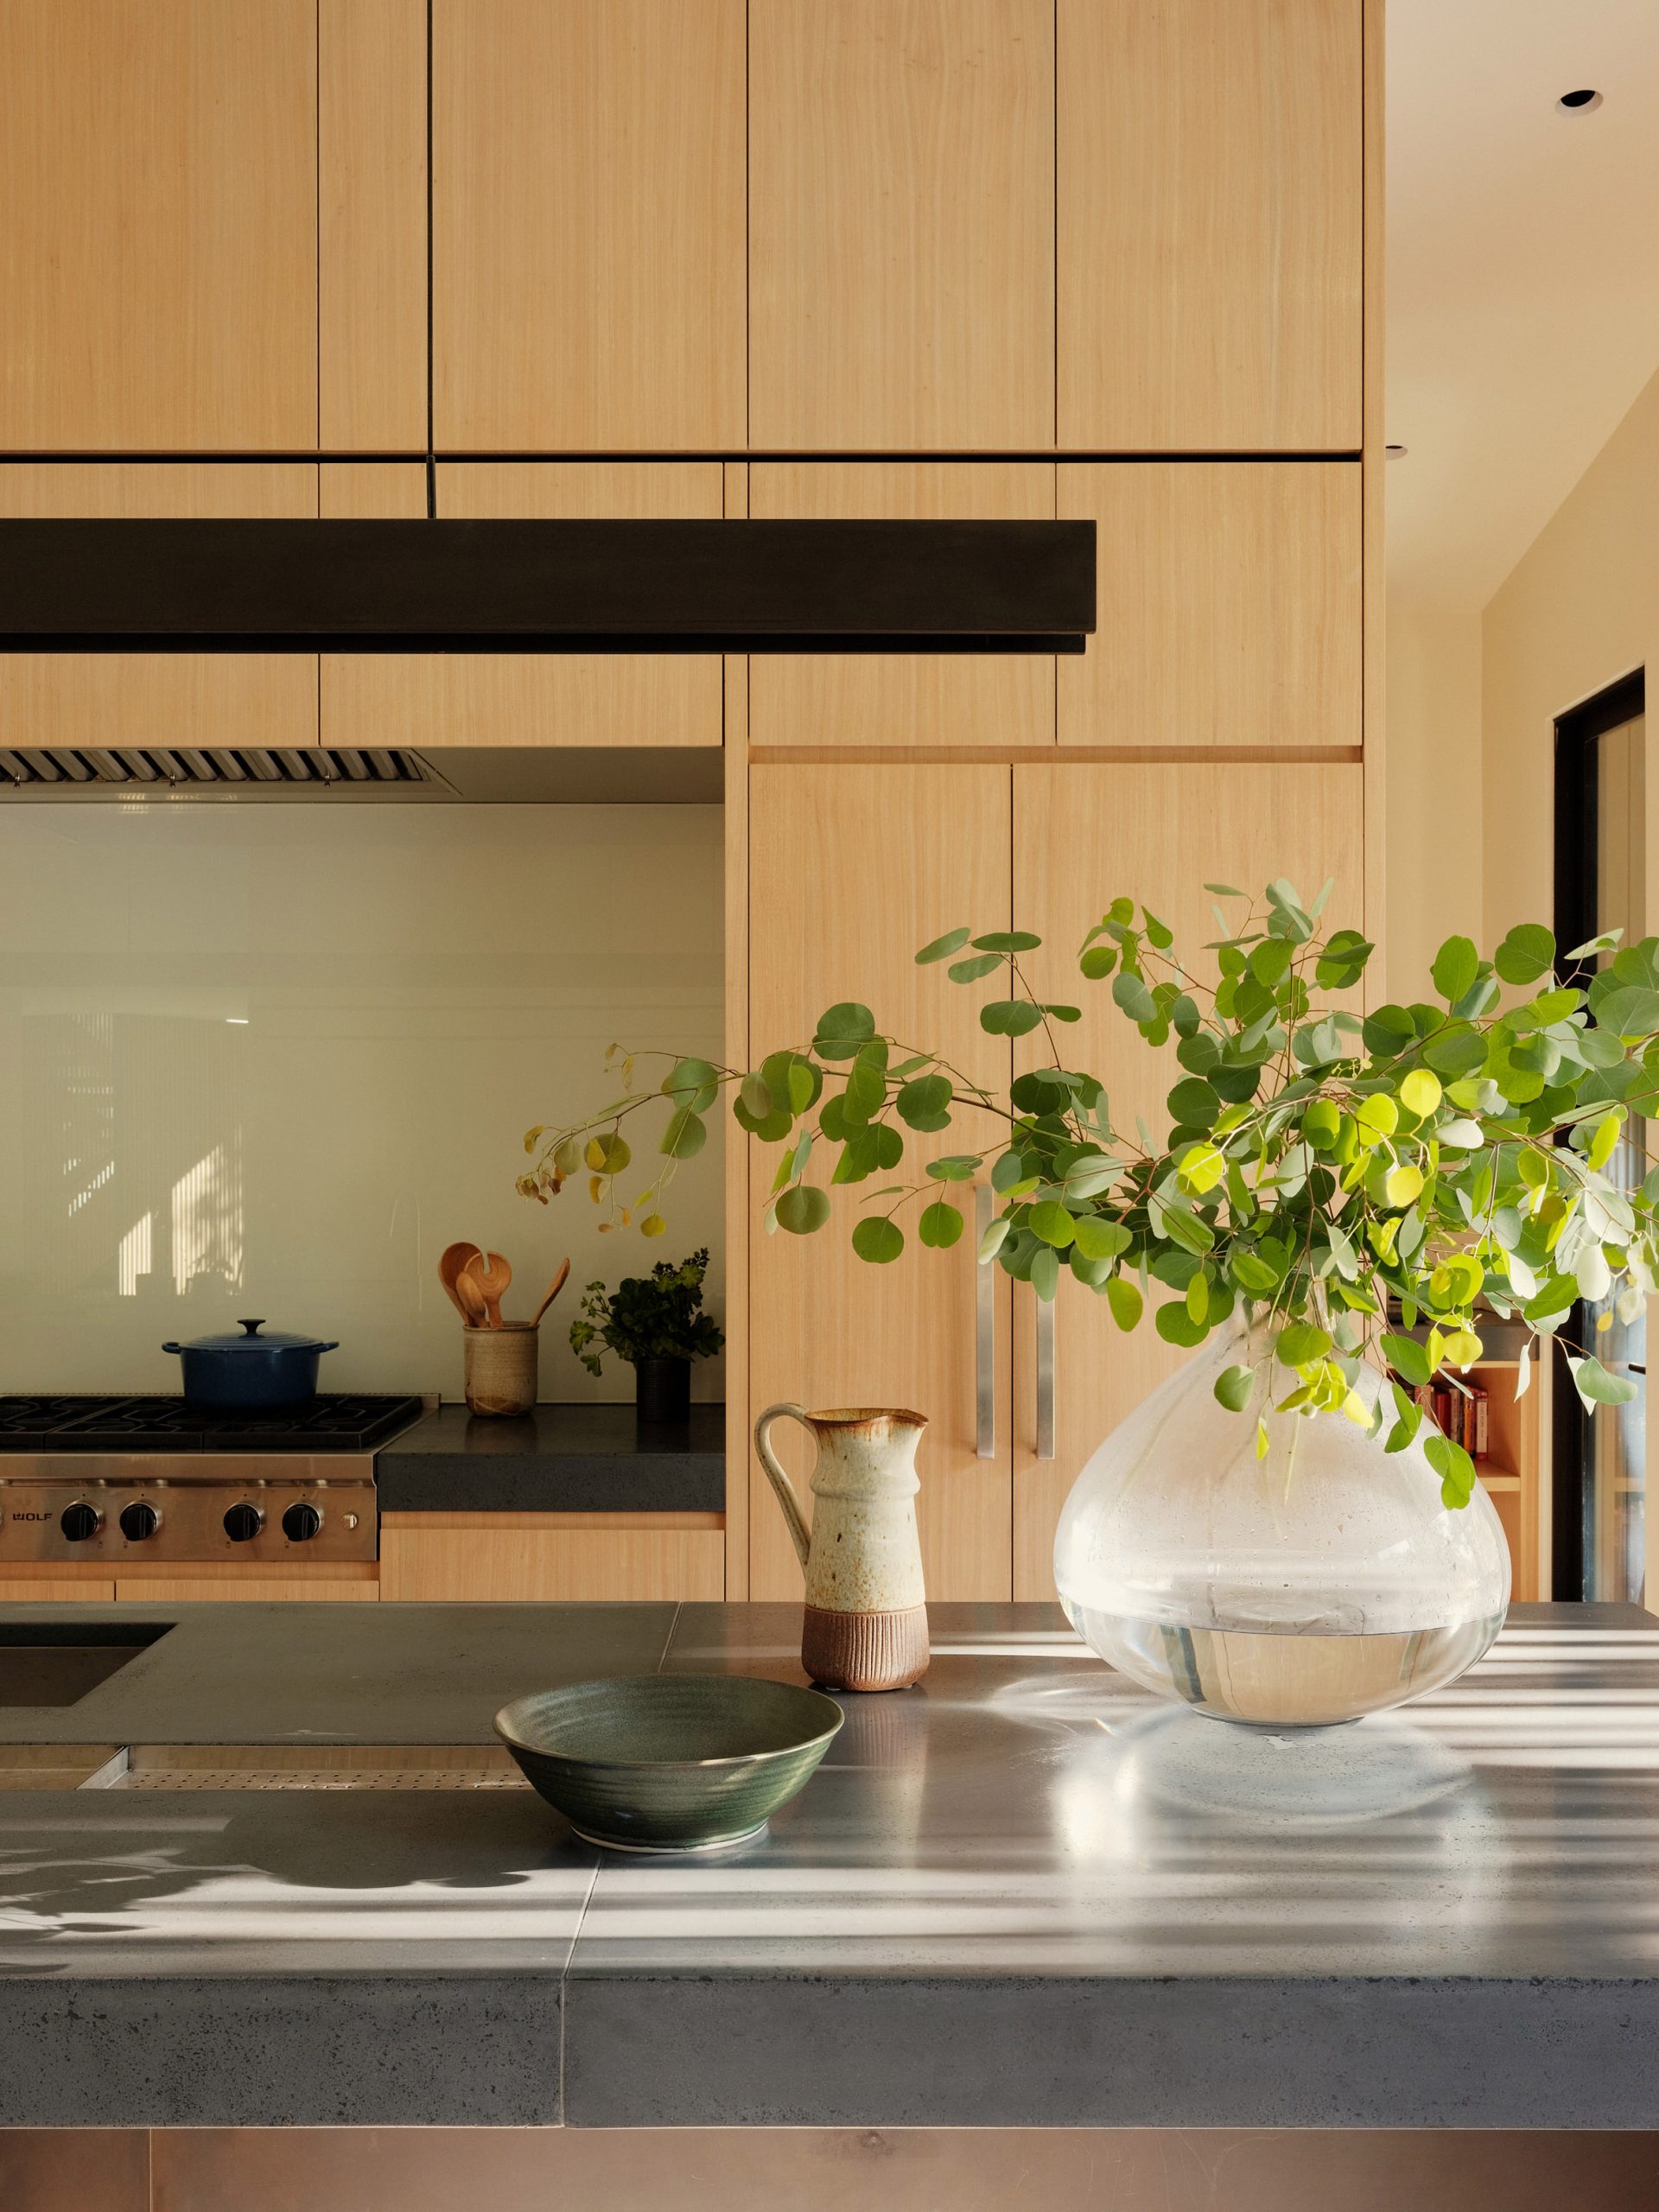 Phòng bếp cực kỳ xinh xắn với những chi tiết trang trí như chiếc lọ thủy tinh, đồ dùng bằng chất liệu gốm sứ mang đến phong cách Nhật Bản giữa Thung lũng Silicon.